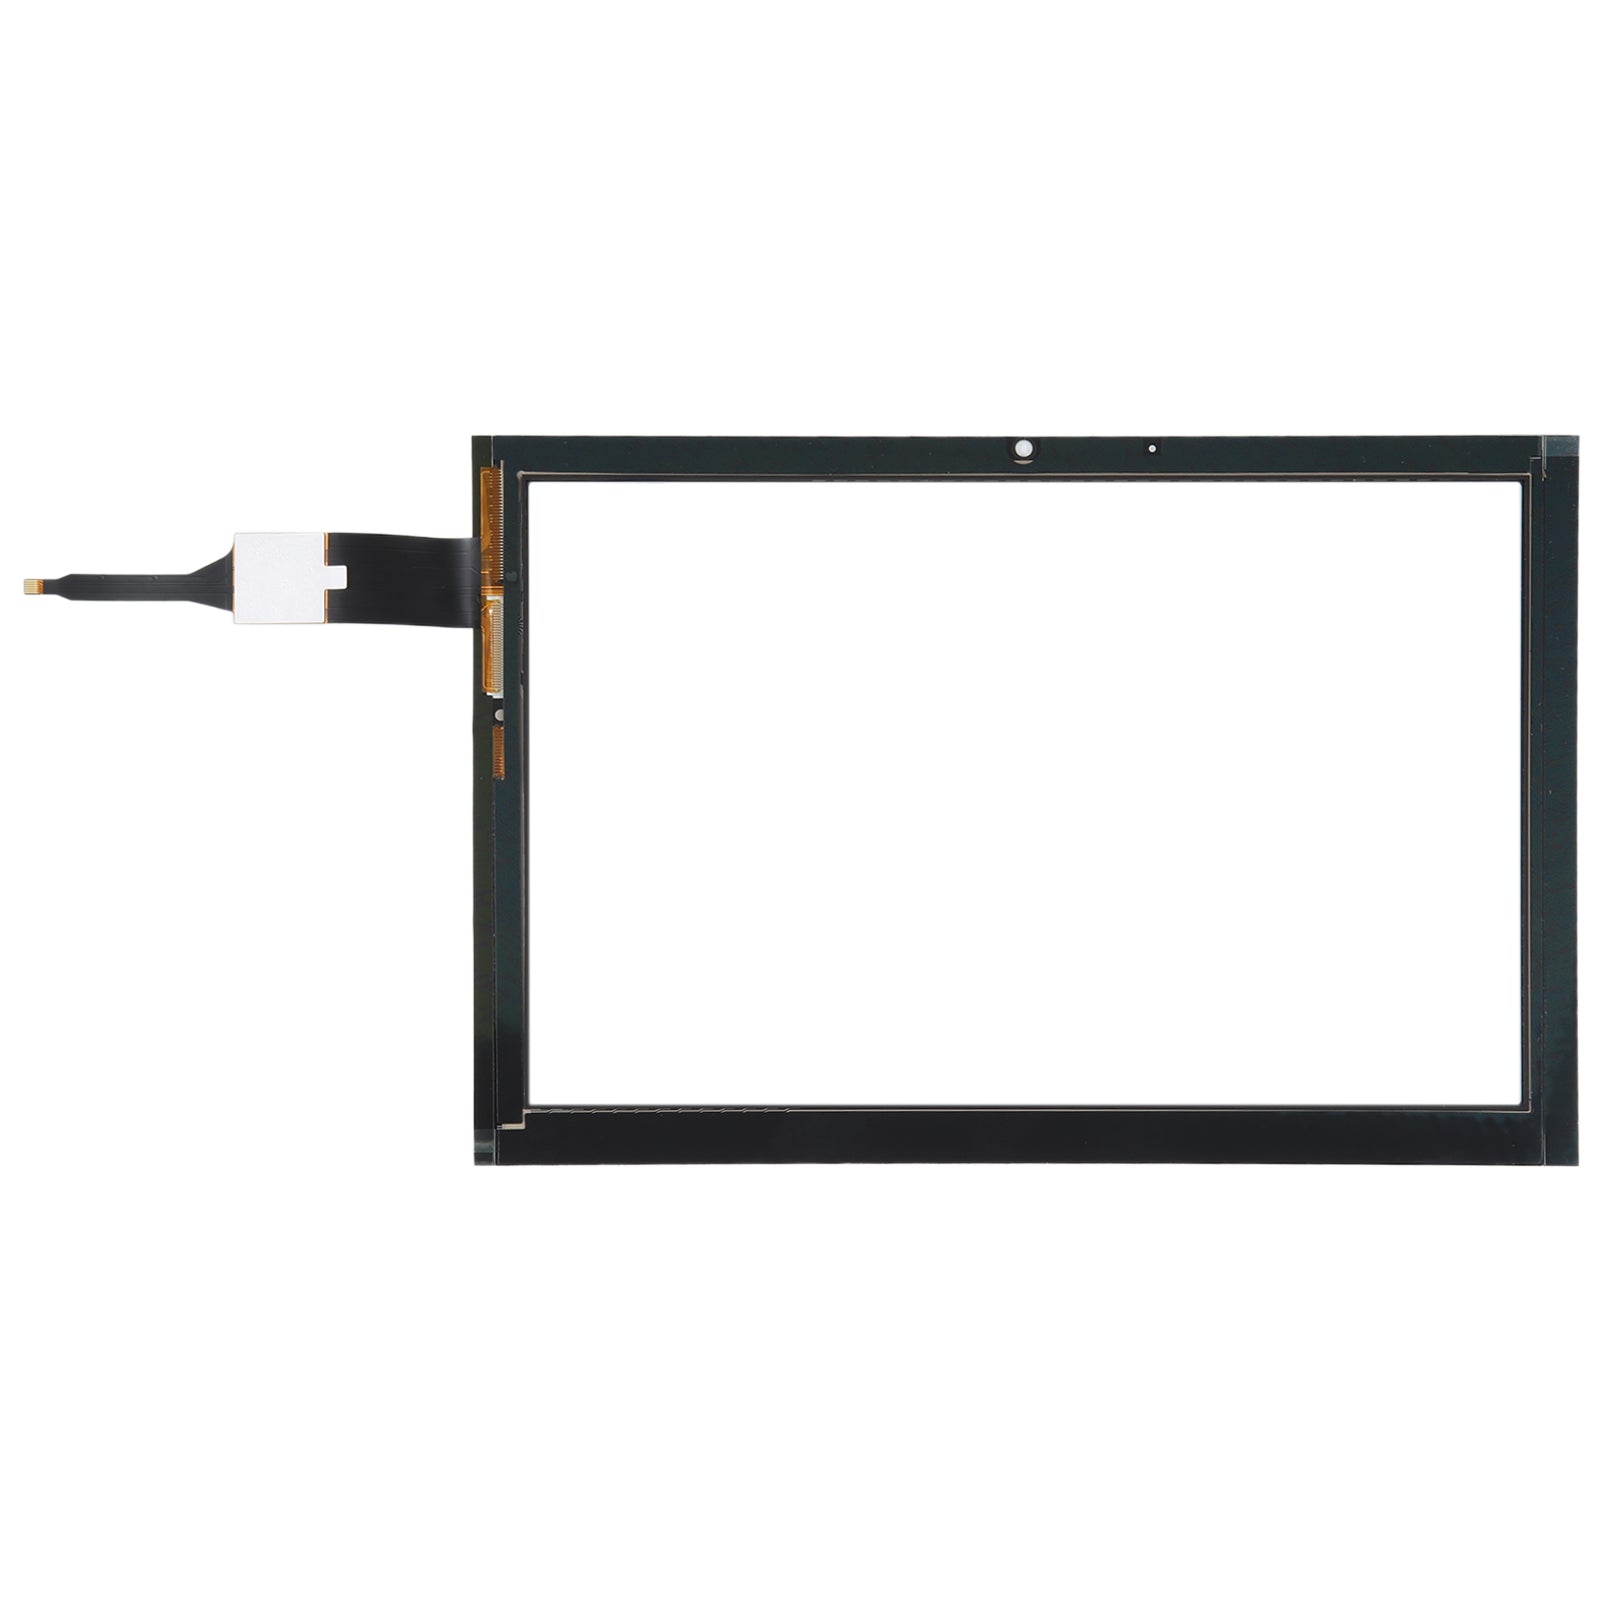 Pantalla Tactil Digitalizador Acer B3-A40 Negro